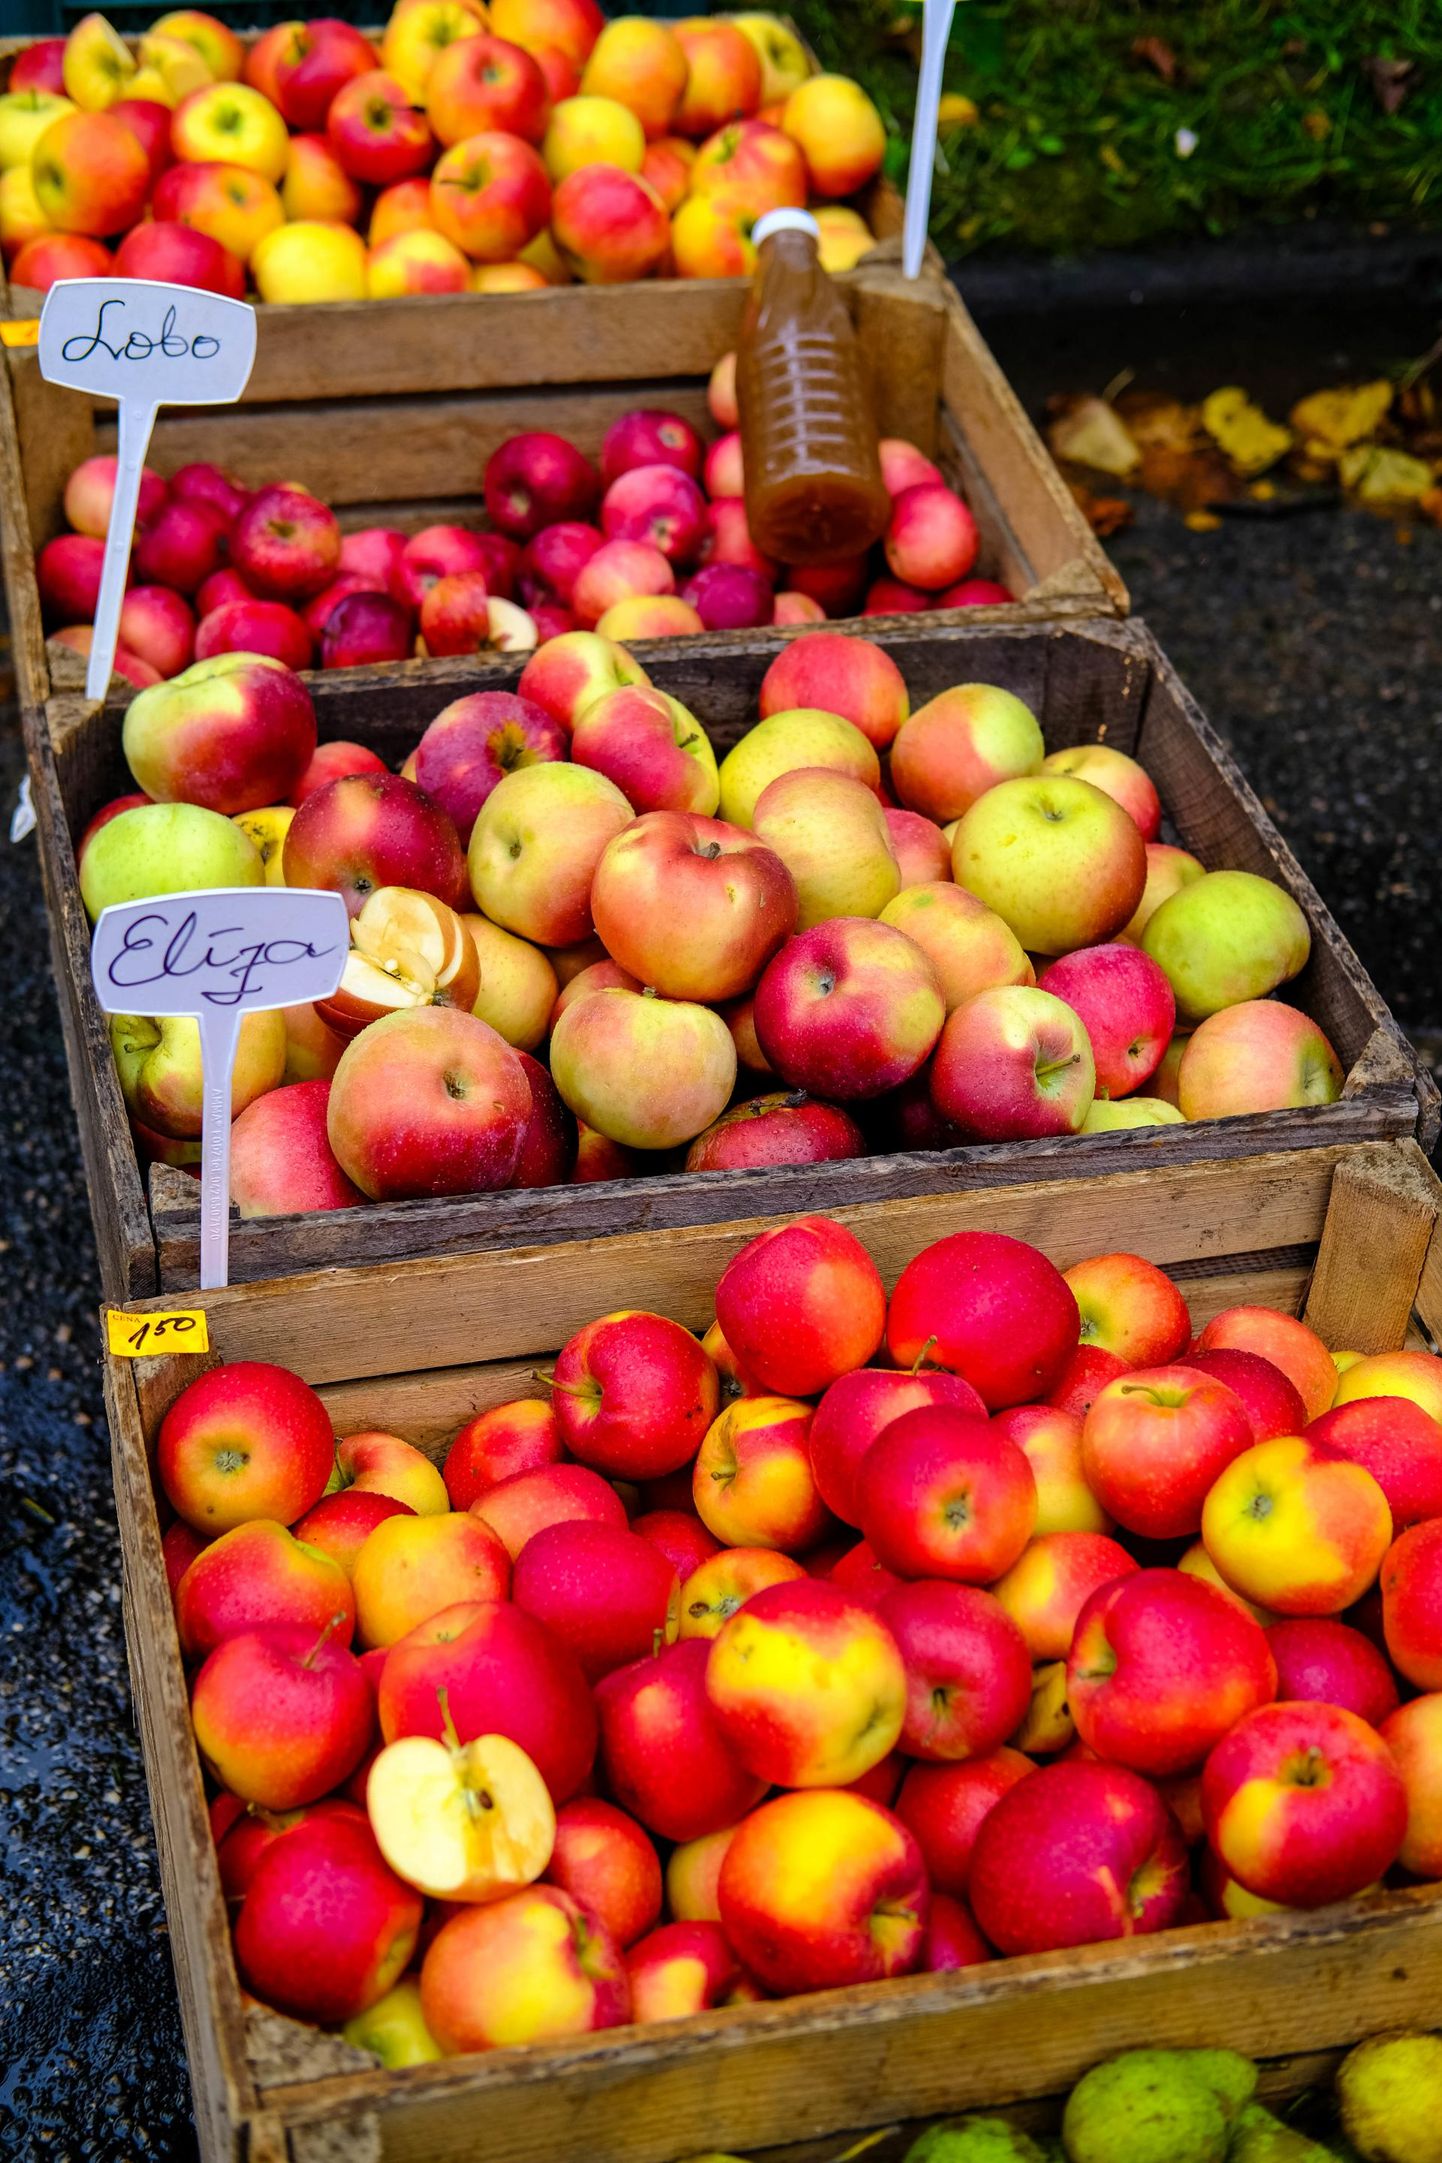 Sakala keskus kutsub linlasi üles taasiseseisvumispäeval oma koduaia õunu teistega jagama.